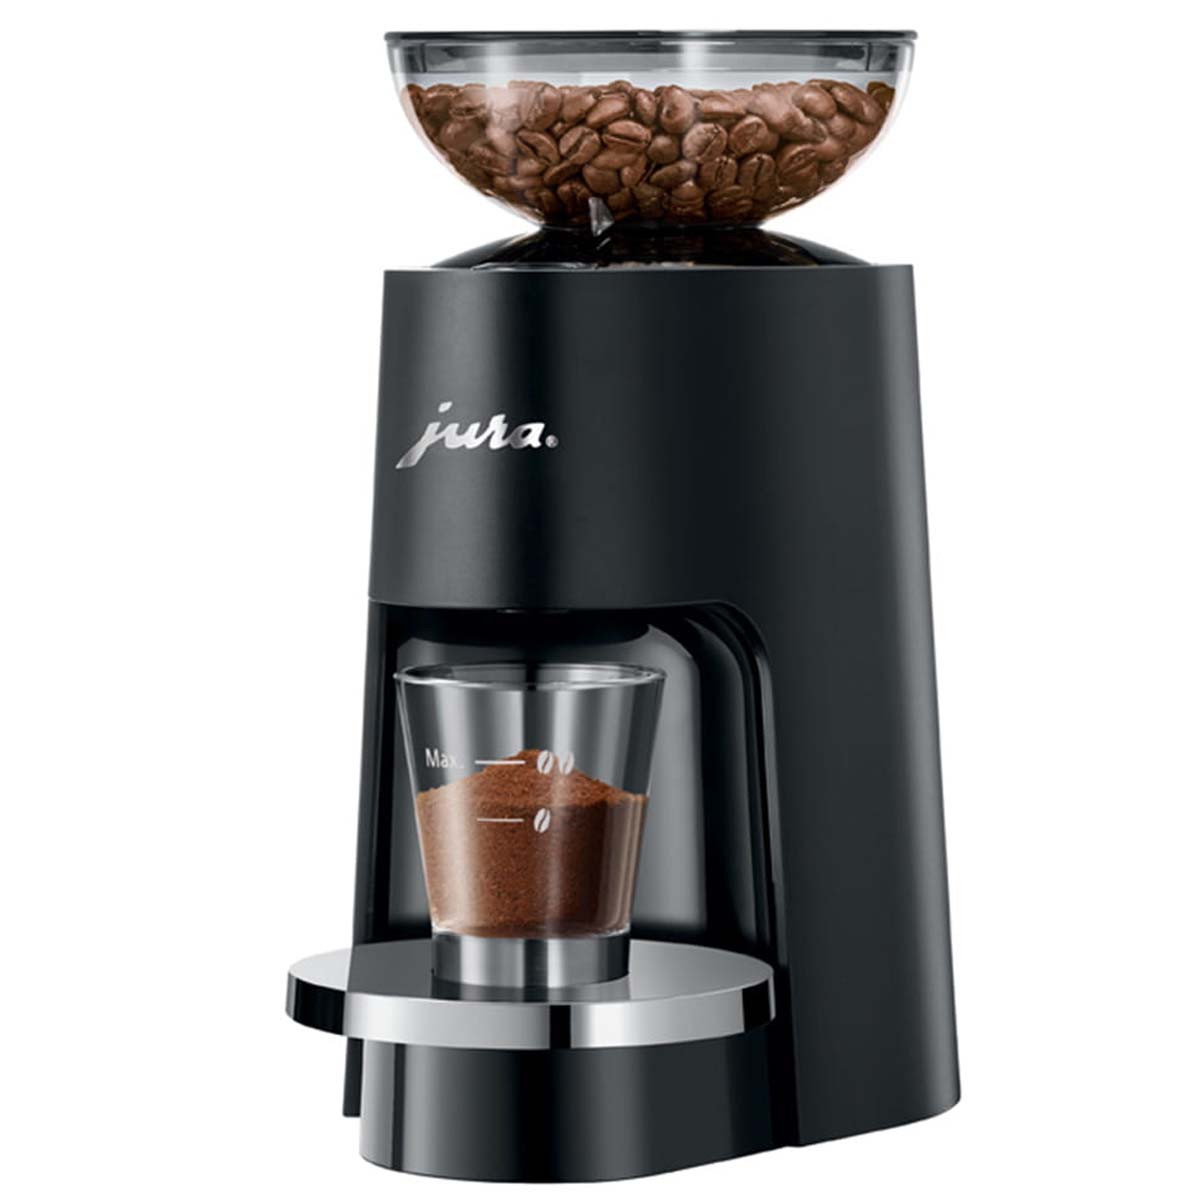 Pastilles de nettoyage pour machine à café - compatible avec Jura